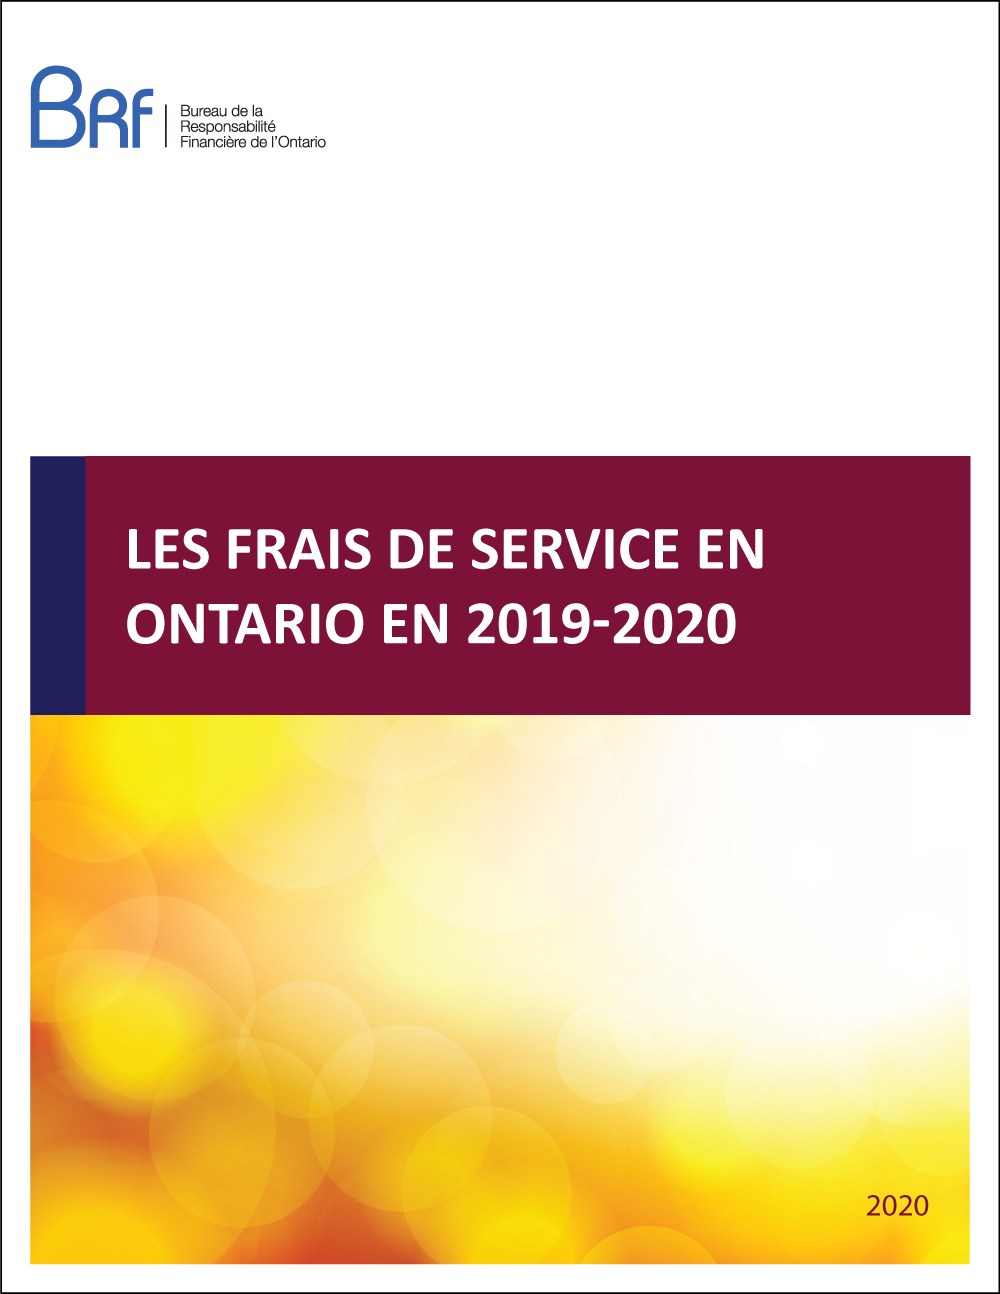 Les frais de service en Ontario en 2019-2020